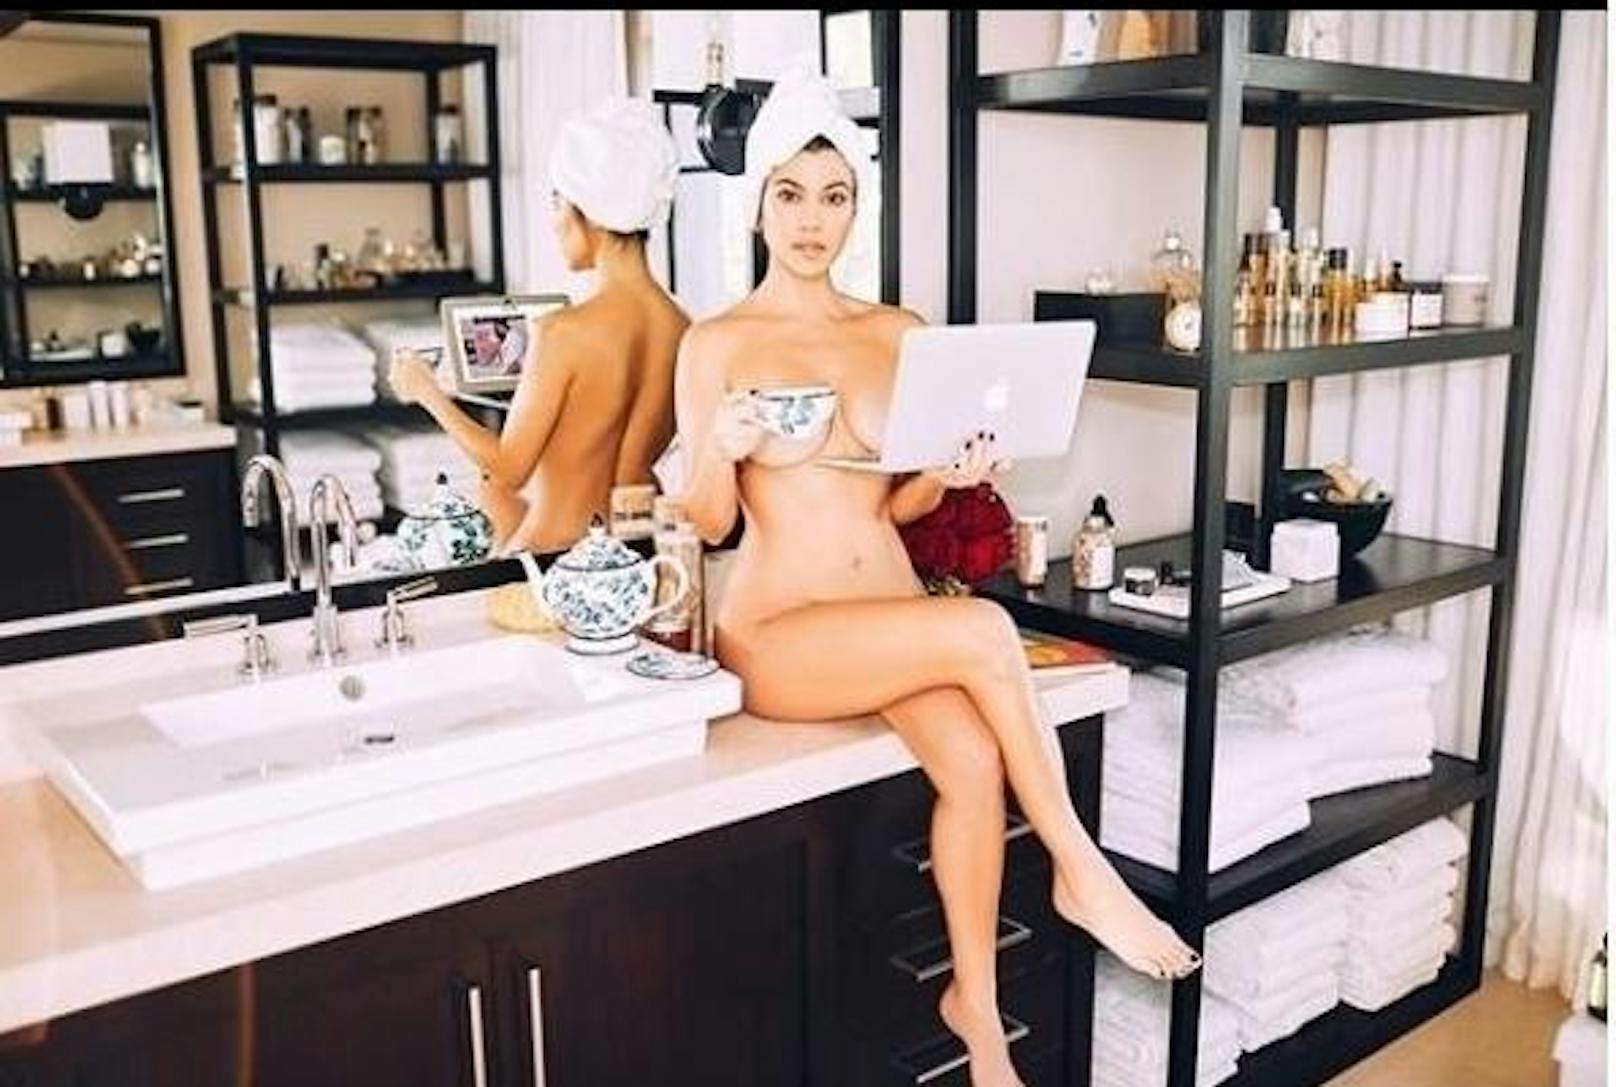 05.03.2019: Kourtney Kardashian beim Morgentee? Im Eva-Kostüm will sie das Interesse an ihrem neuen Projekt "Poosh" wecken. Gerüchteweise soll es sich um einen Lifestyle-Blog handeln